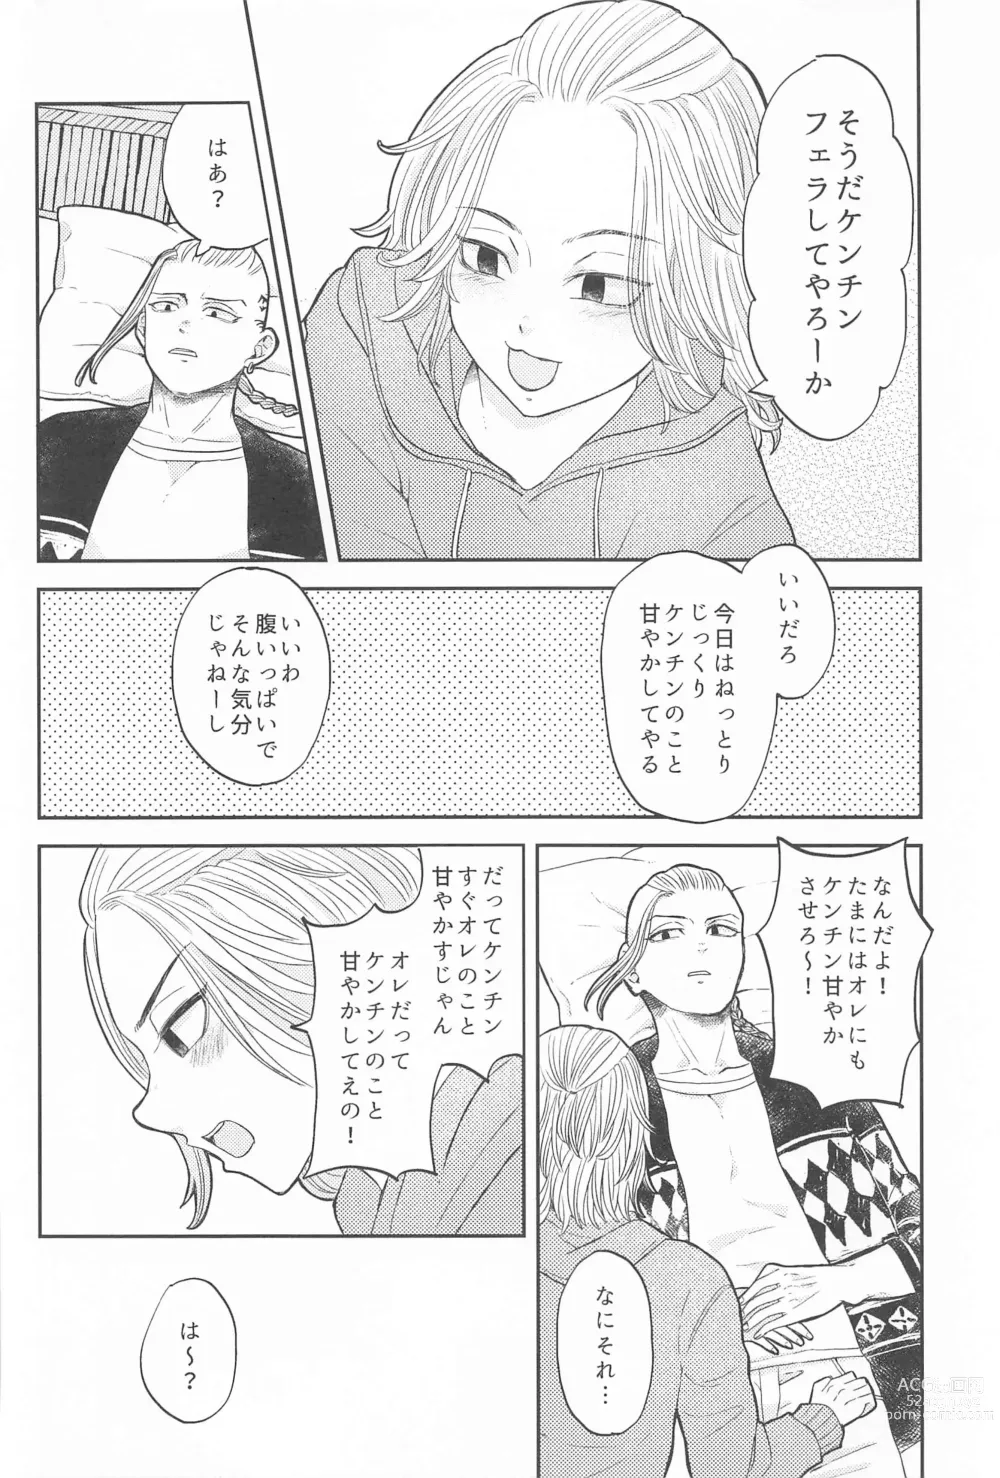 Page 7 of doujinshi Mikey-kun  wa Amayaka Shitai!